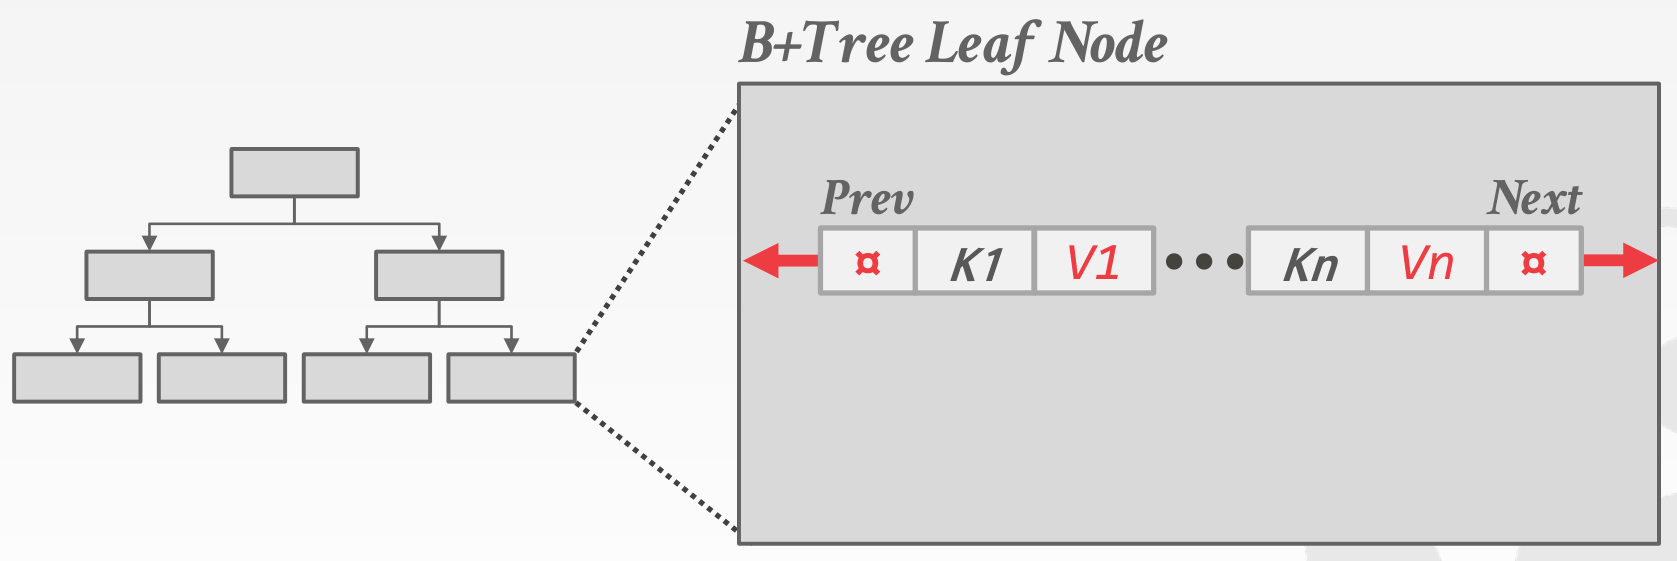 bptree-leaf-node.png